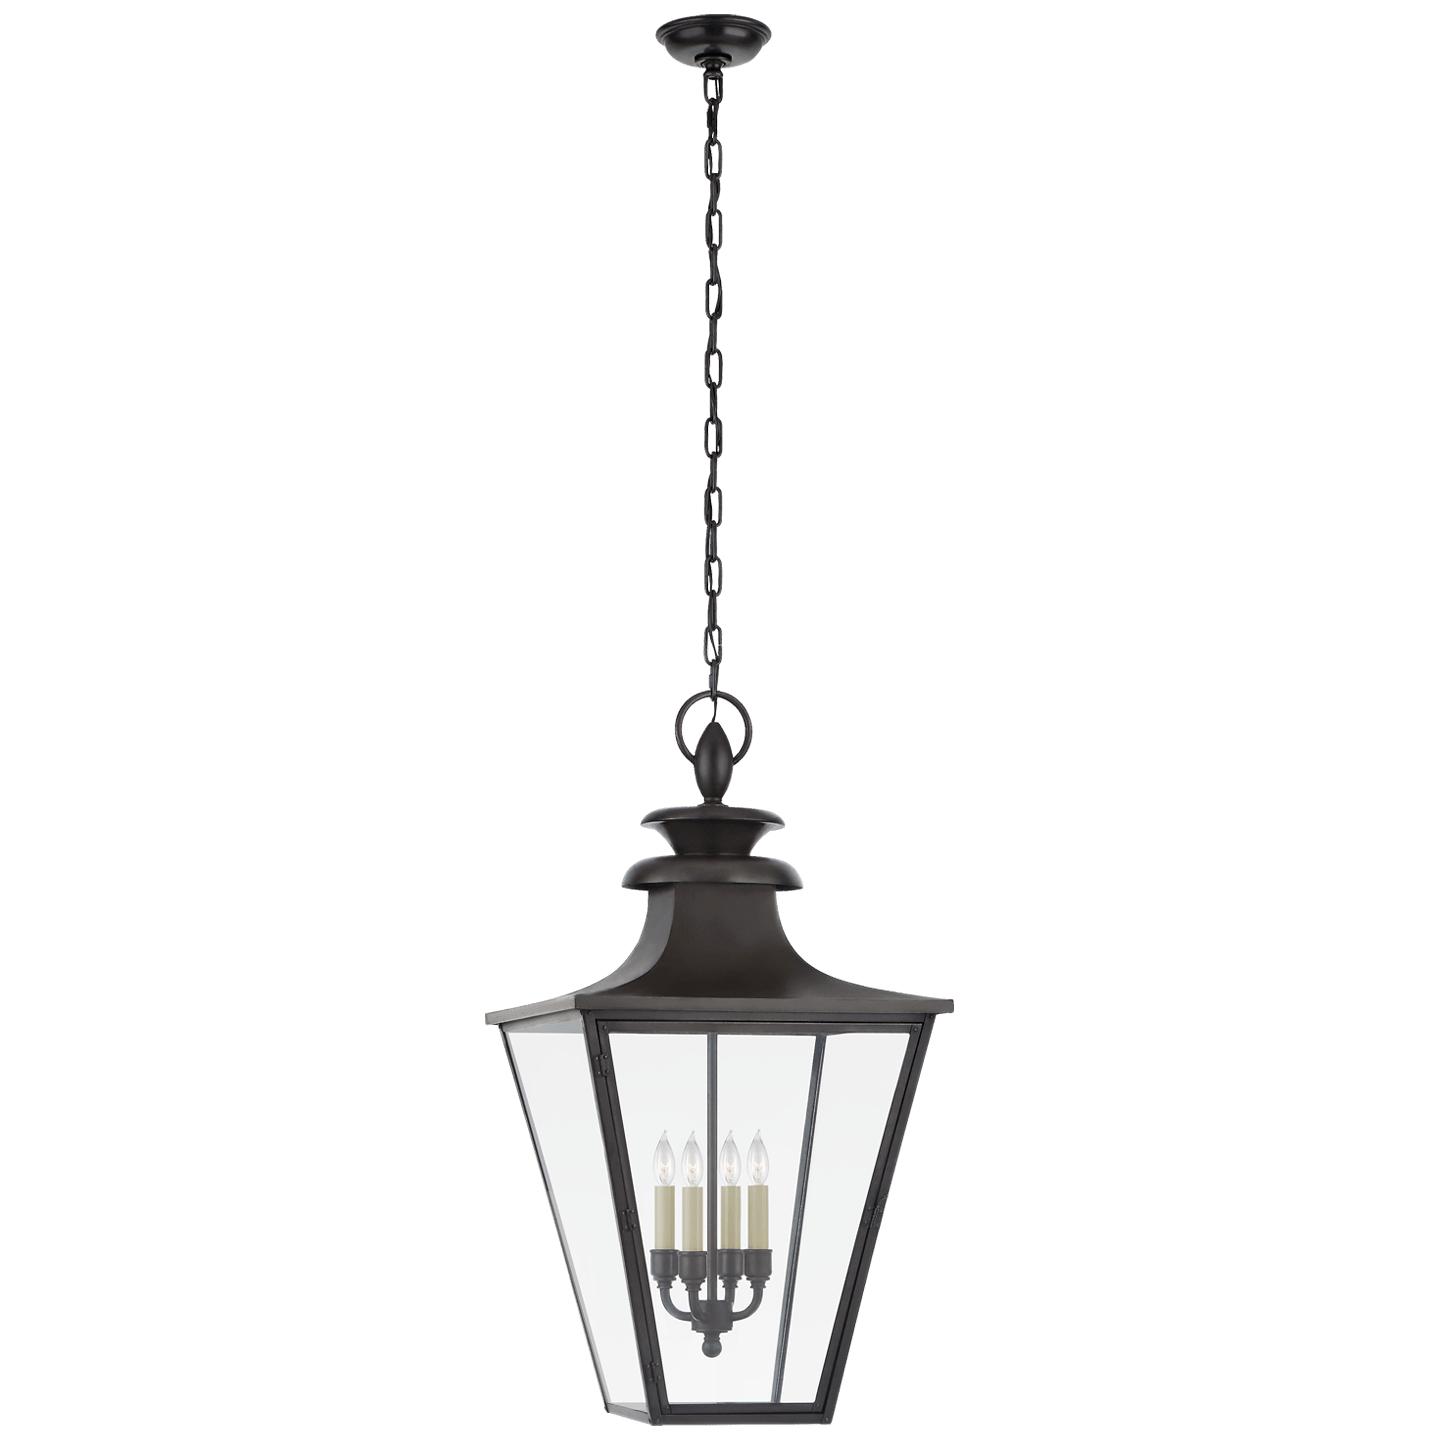 Купить Подвесной светильник Albermarle Large Hanging Lantern в интернет-магазине roooms.ru